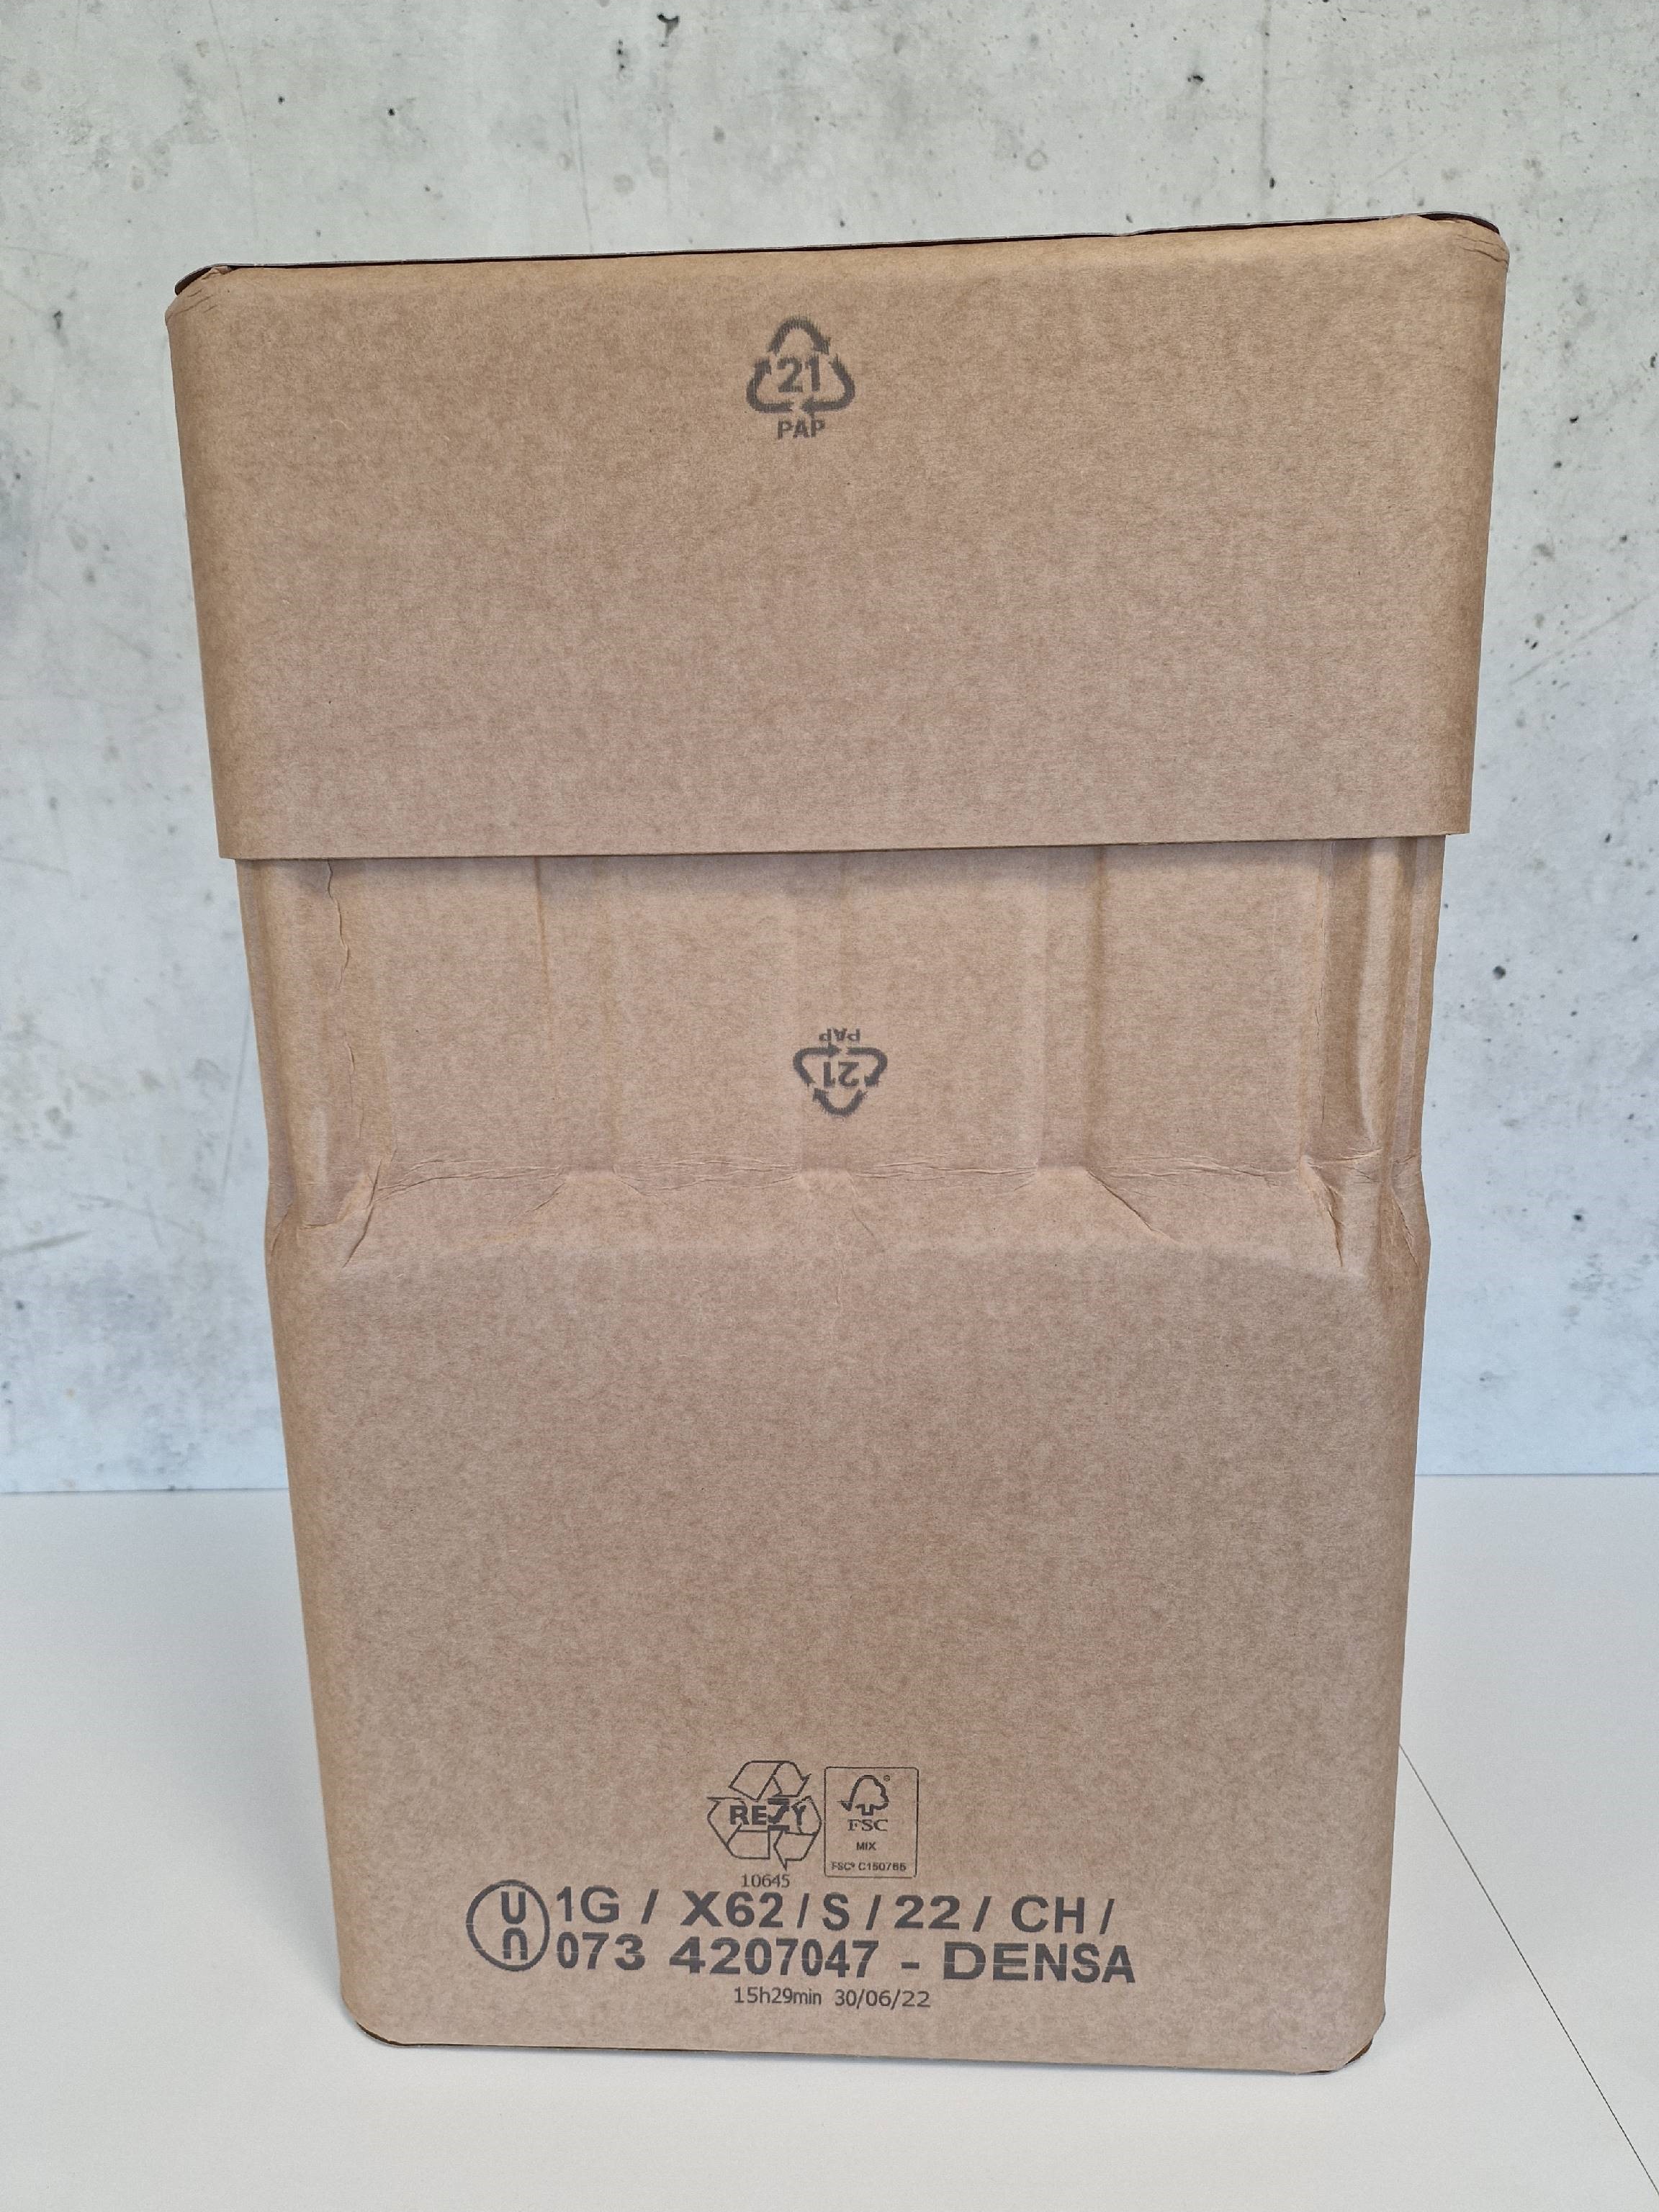 Eco Drum PAP21 Umweltkennzeichnung Verpackung Fibertrommel